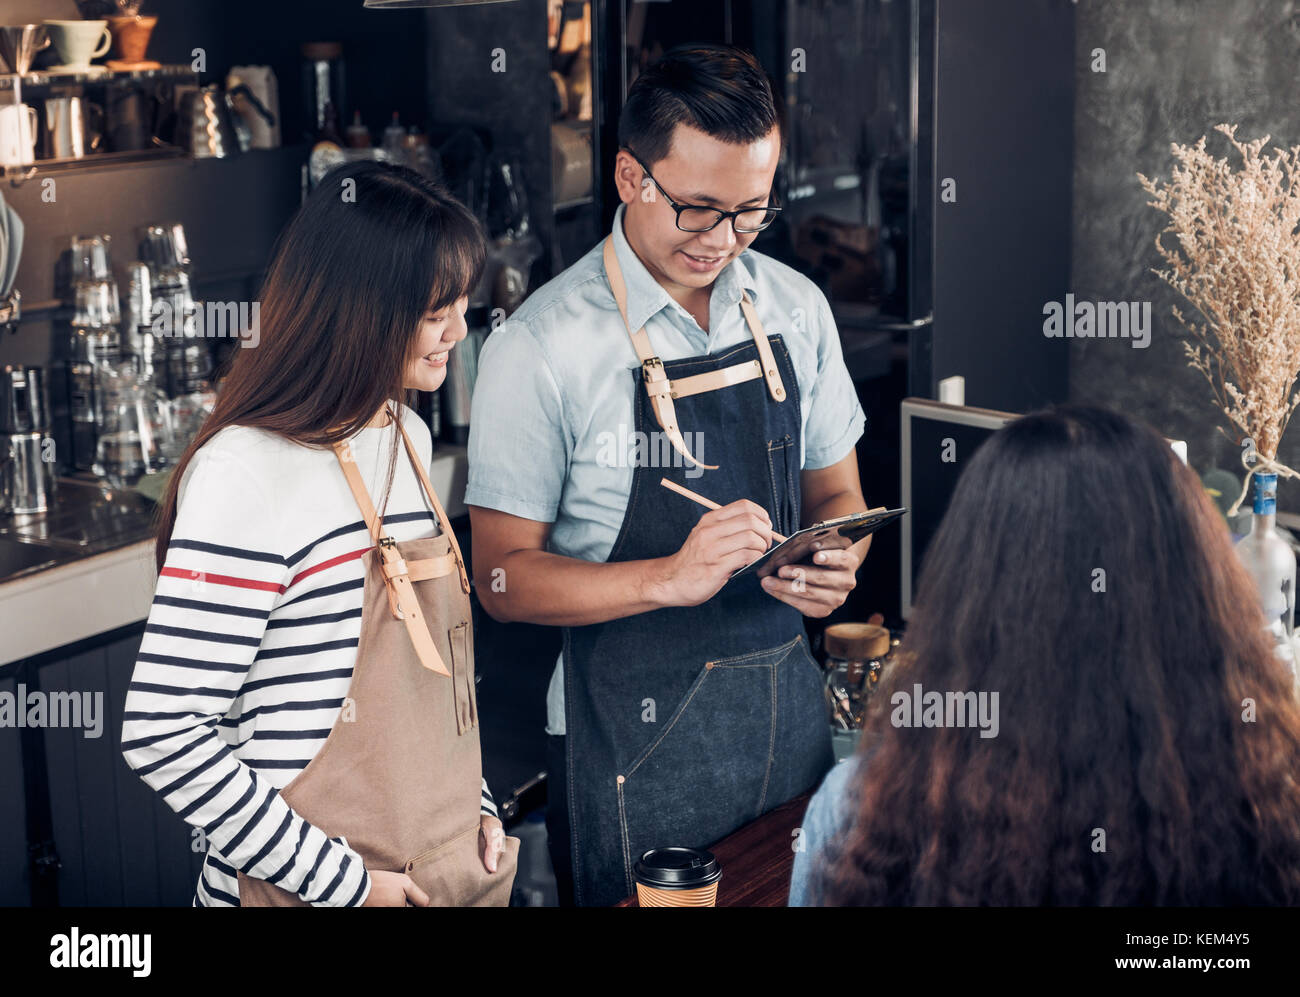 Asien barista Kellner um von Kunden im Coffee Shop, zwei cafe Besitzer schreiben Drink an der Bar, Essen und Trinken, Geschäftskonzept, Service Stockfoto